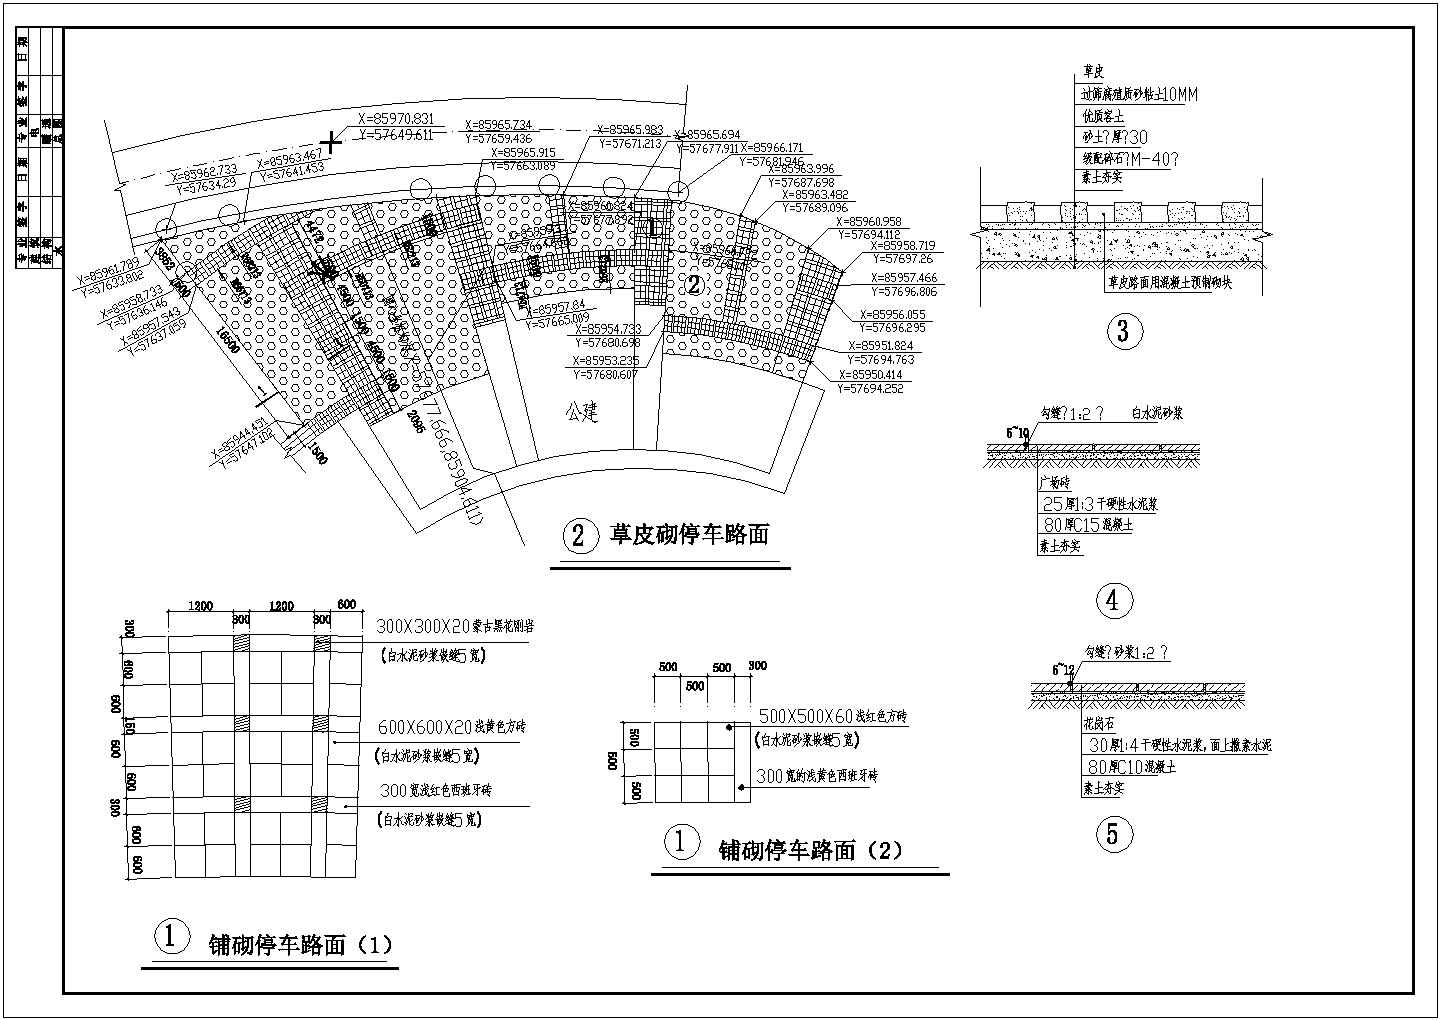 【苏州】某地新型公园全套施工设计cad图纸(含海德公园绿化布置图)